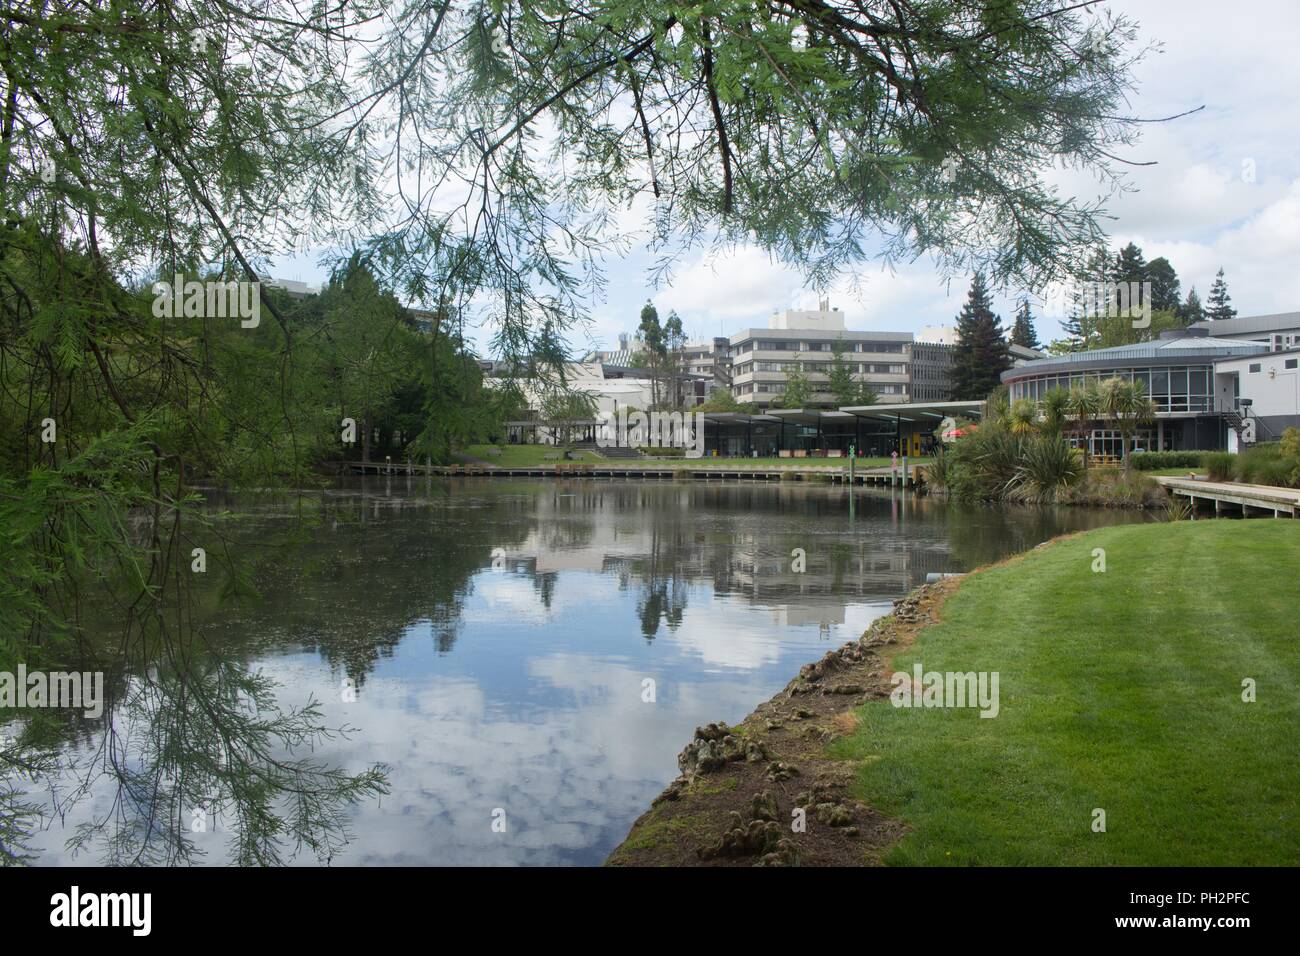 Campus de l'Université de Waikato à Hamilton, Nouvelle-Zélande sur l'image, Novembre, 2017. () Banque D'Images